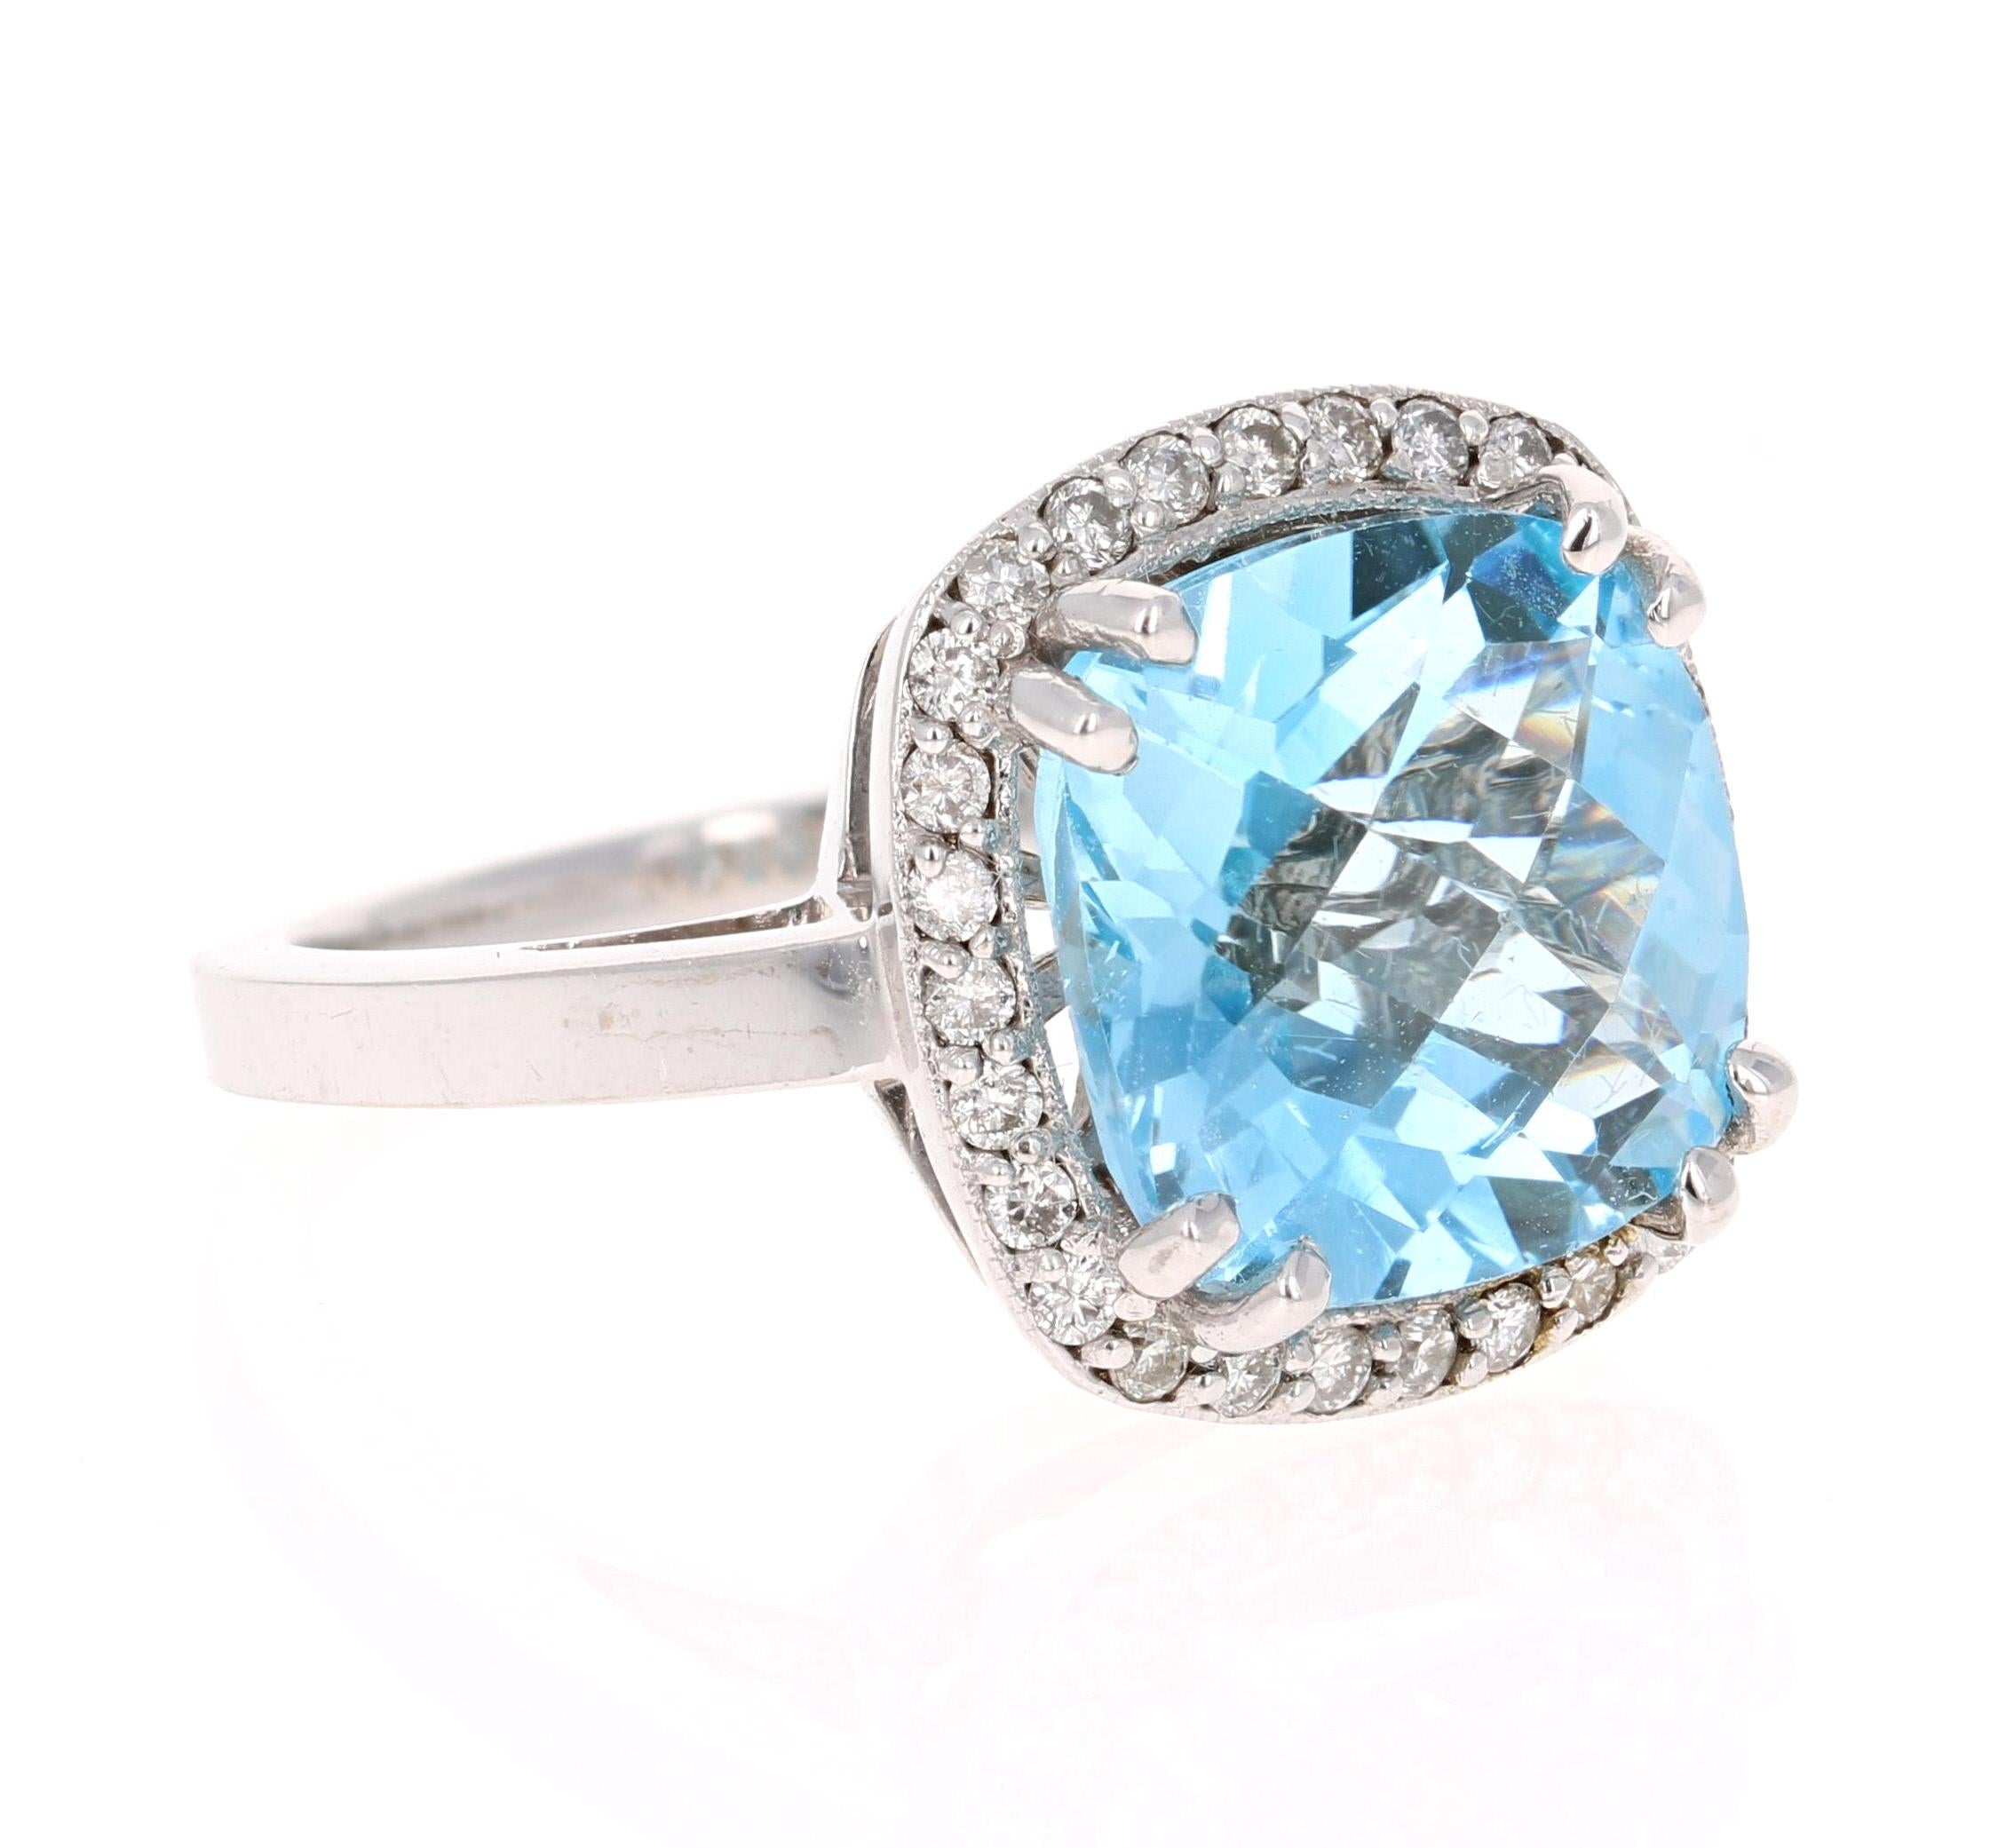 Diese unglaubliche Square Cushion Cut Blue Topaz und Diamant-Ring hat eine atemberaubende und große 8,94 Karat Blue Topaz und seine umgeben von einem Halo von 28 Round Cut Diamanten, die 0,39 Karat wiegen. Das Gesamtkaratgewicht des Rings beträgt